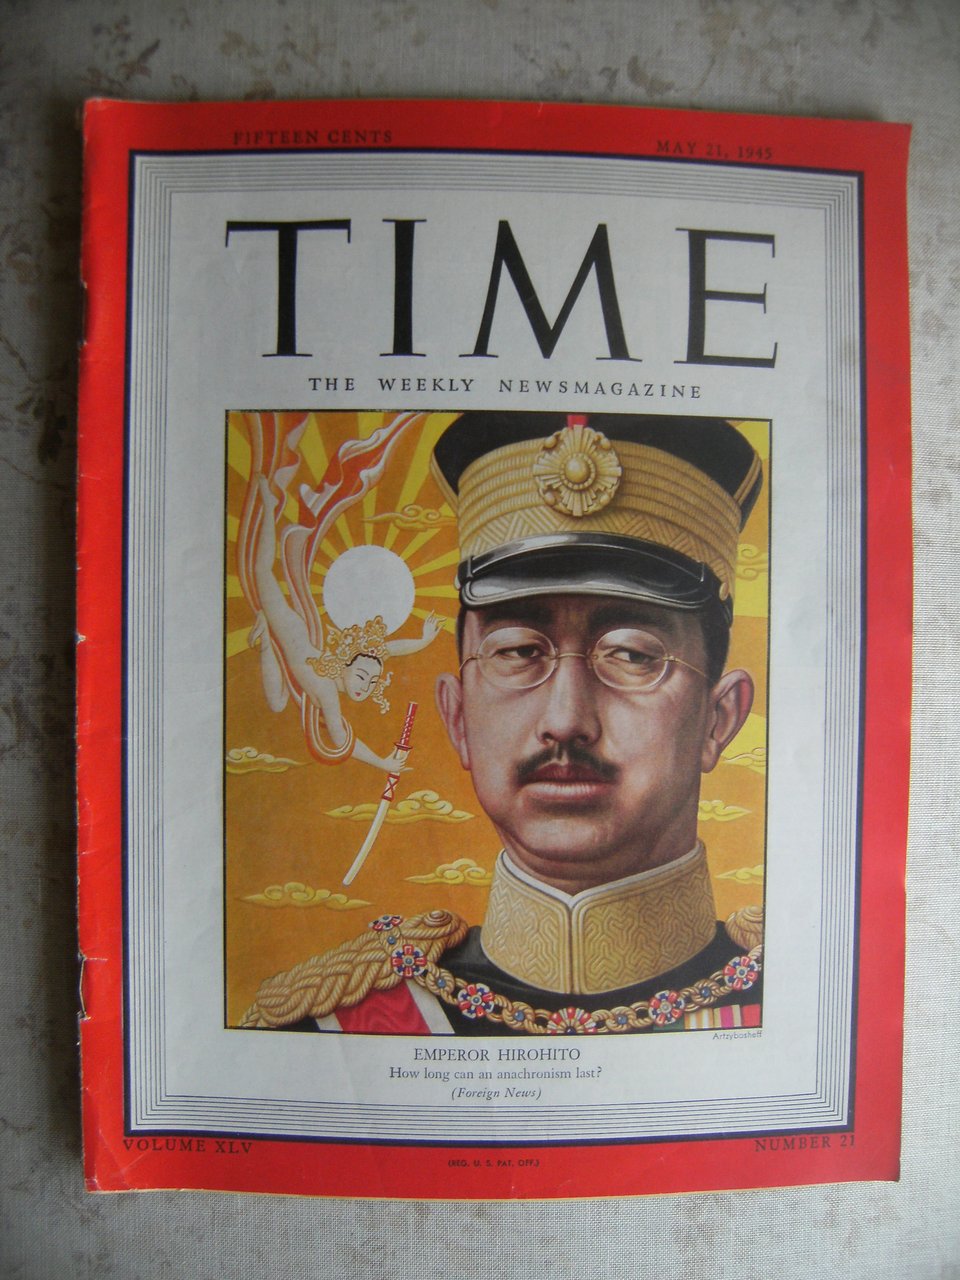 TIME MAGAZINE - EMPEROR HIROHITO